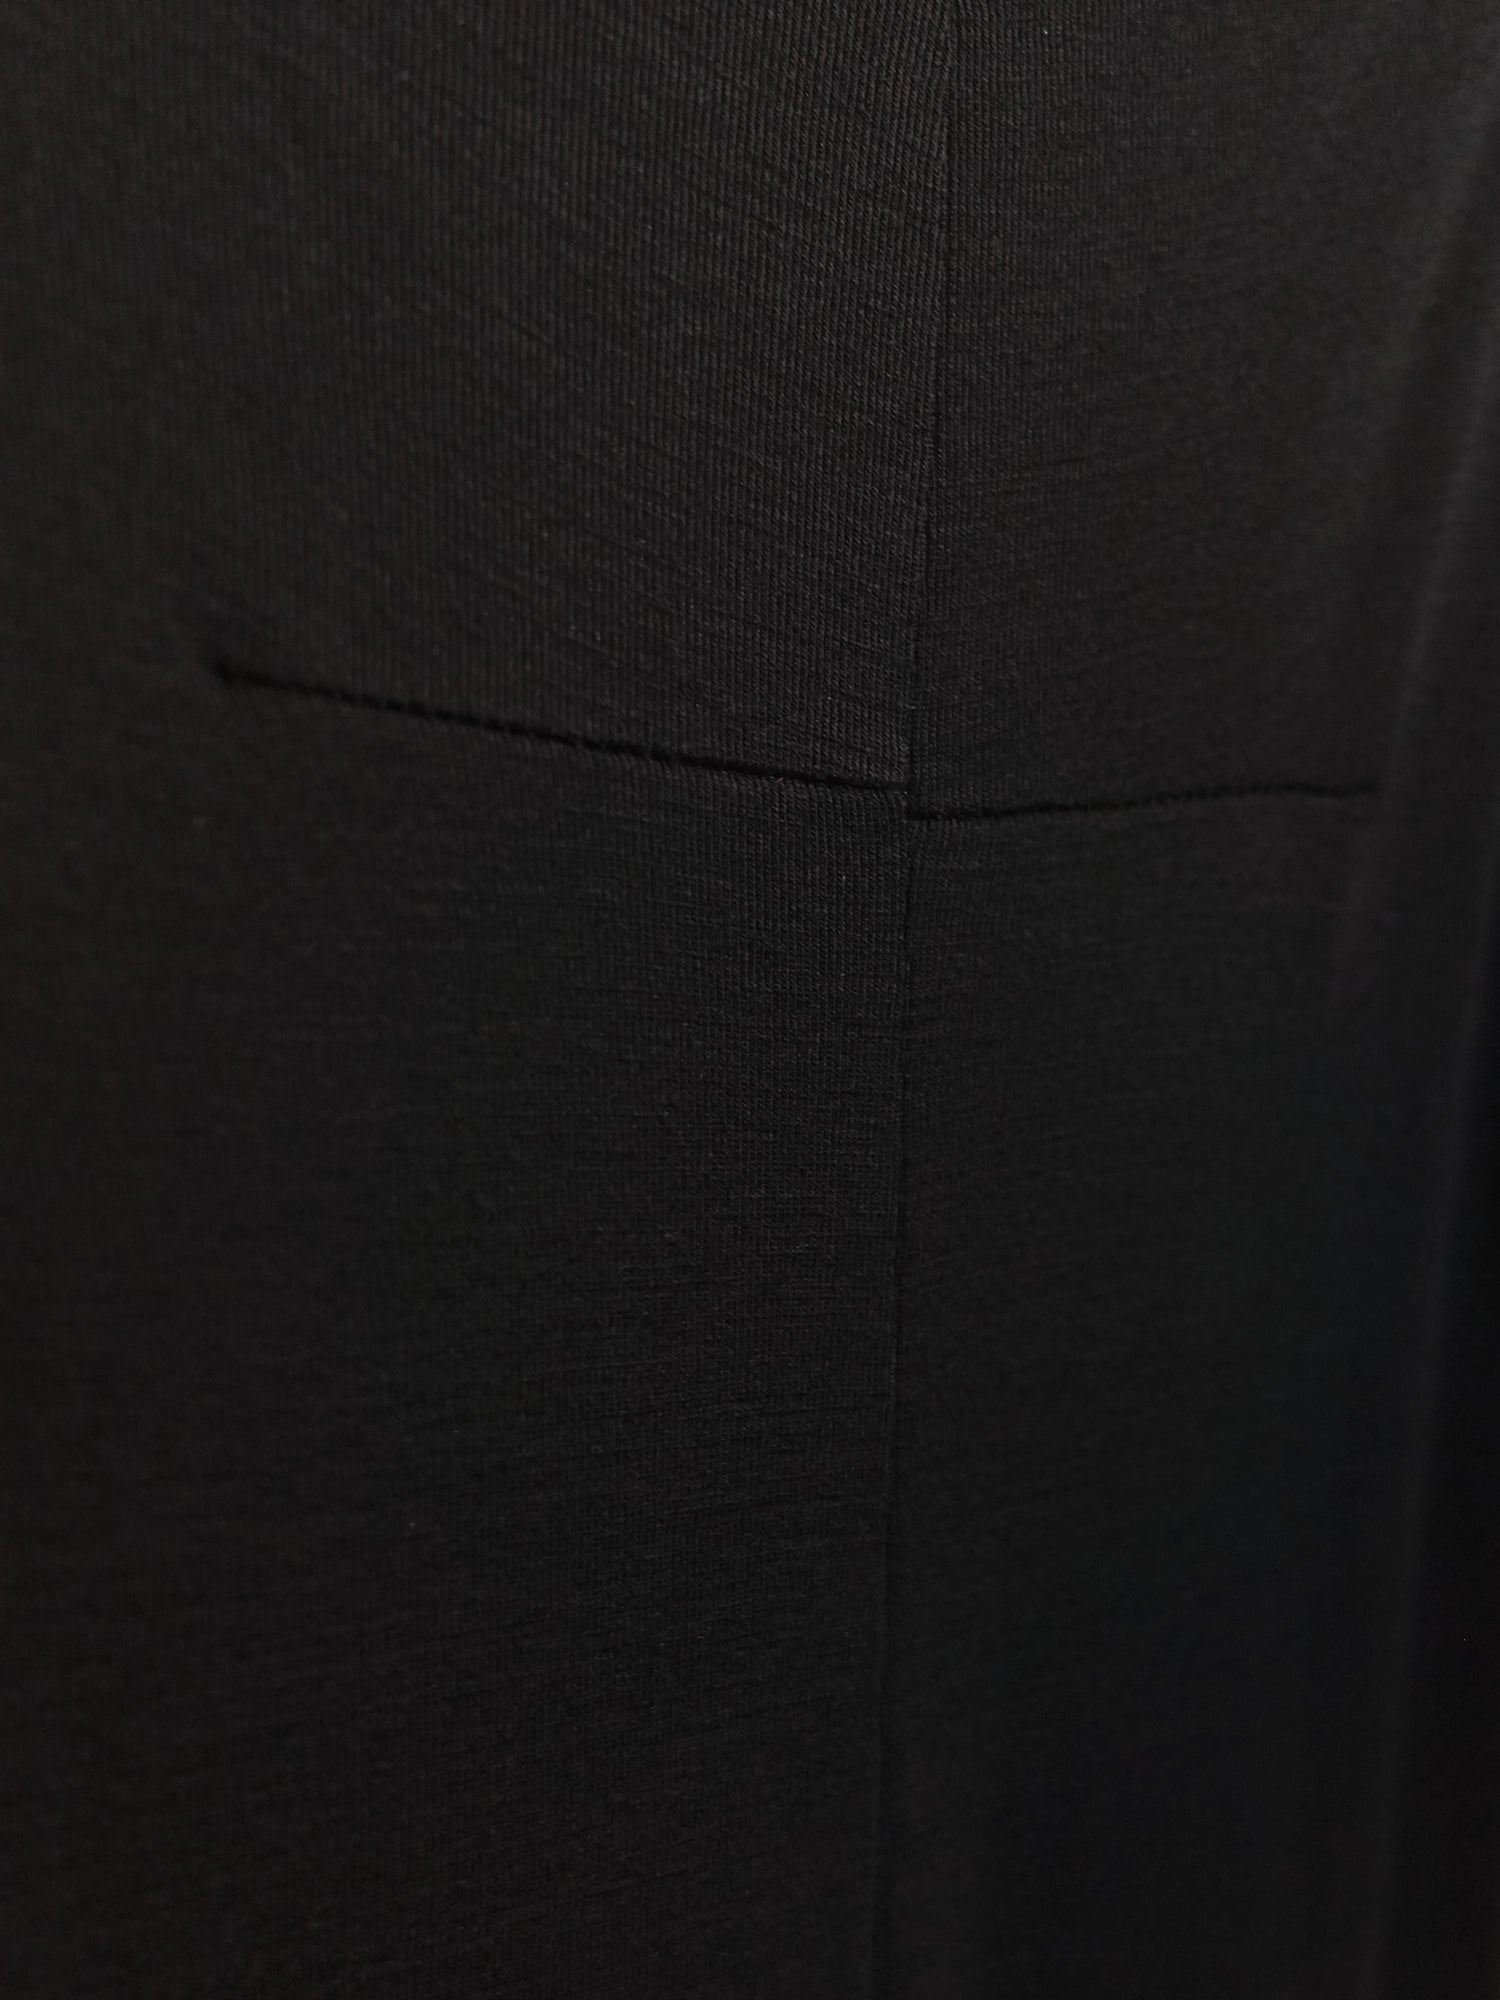 Helmut Lang 1990s black wool jersey singlet dress - size S